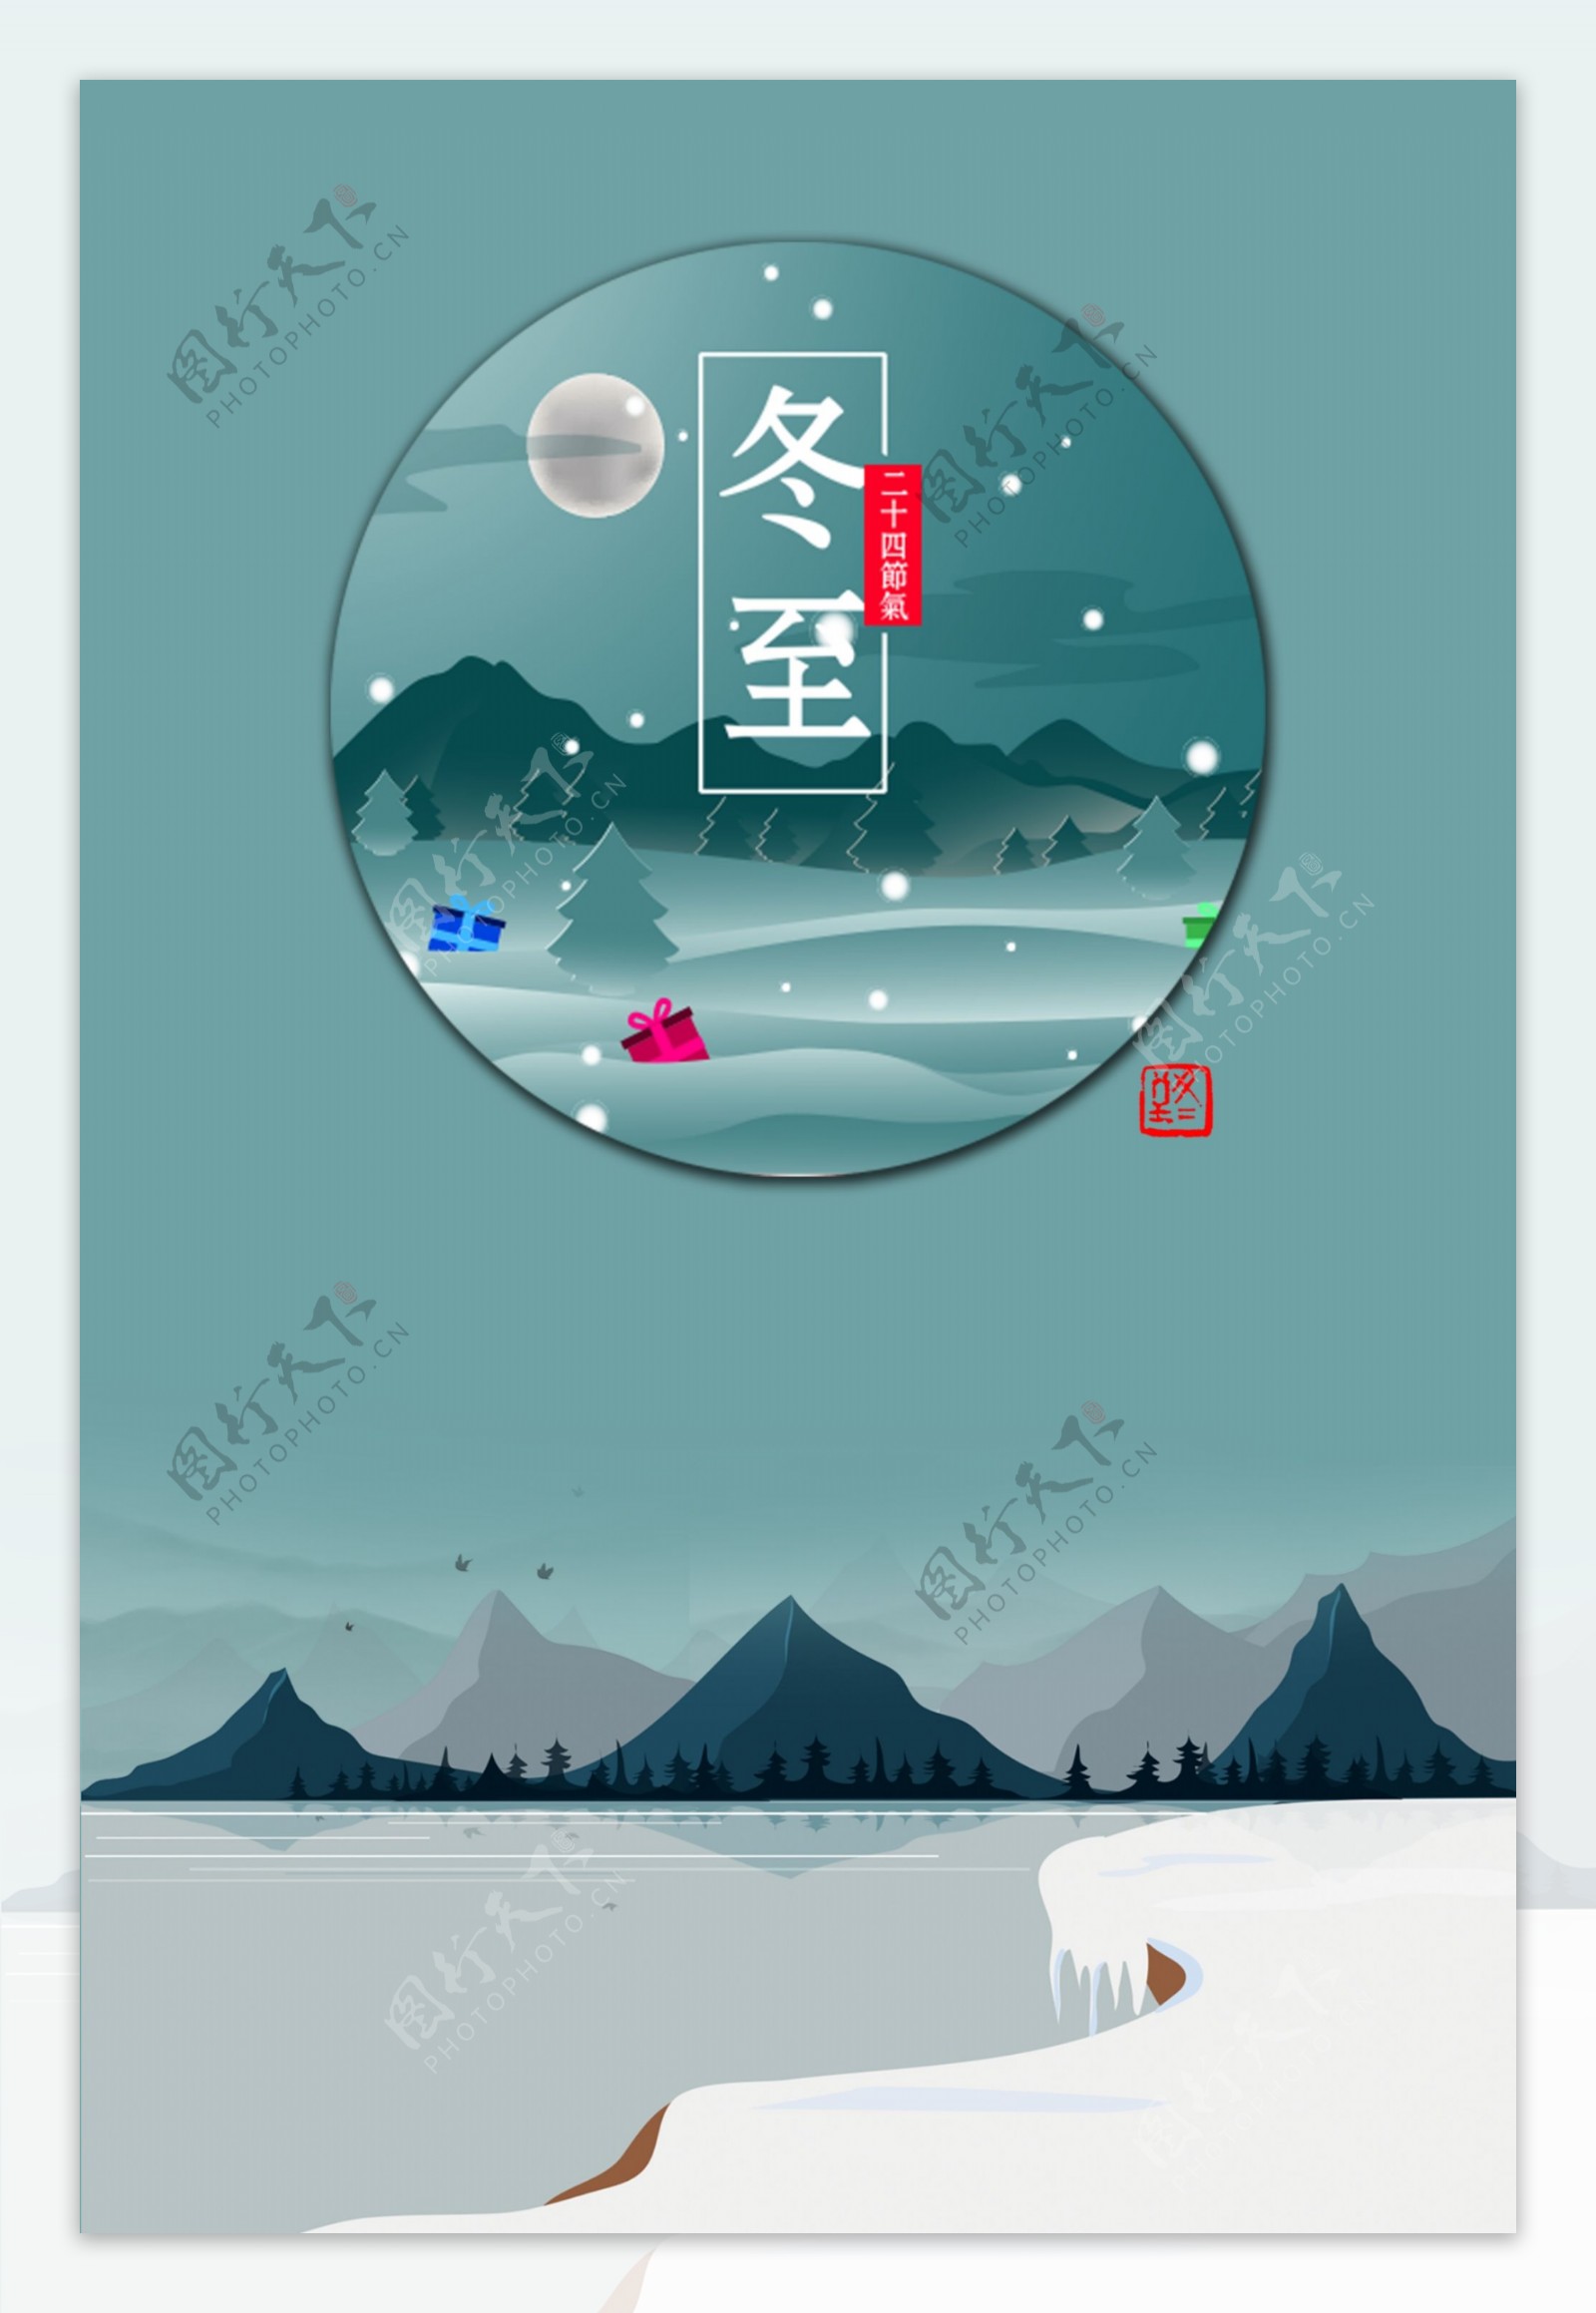 冬至蓝色夜景插画海报设计PSD模板